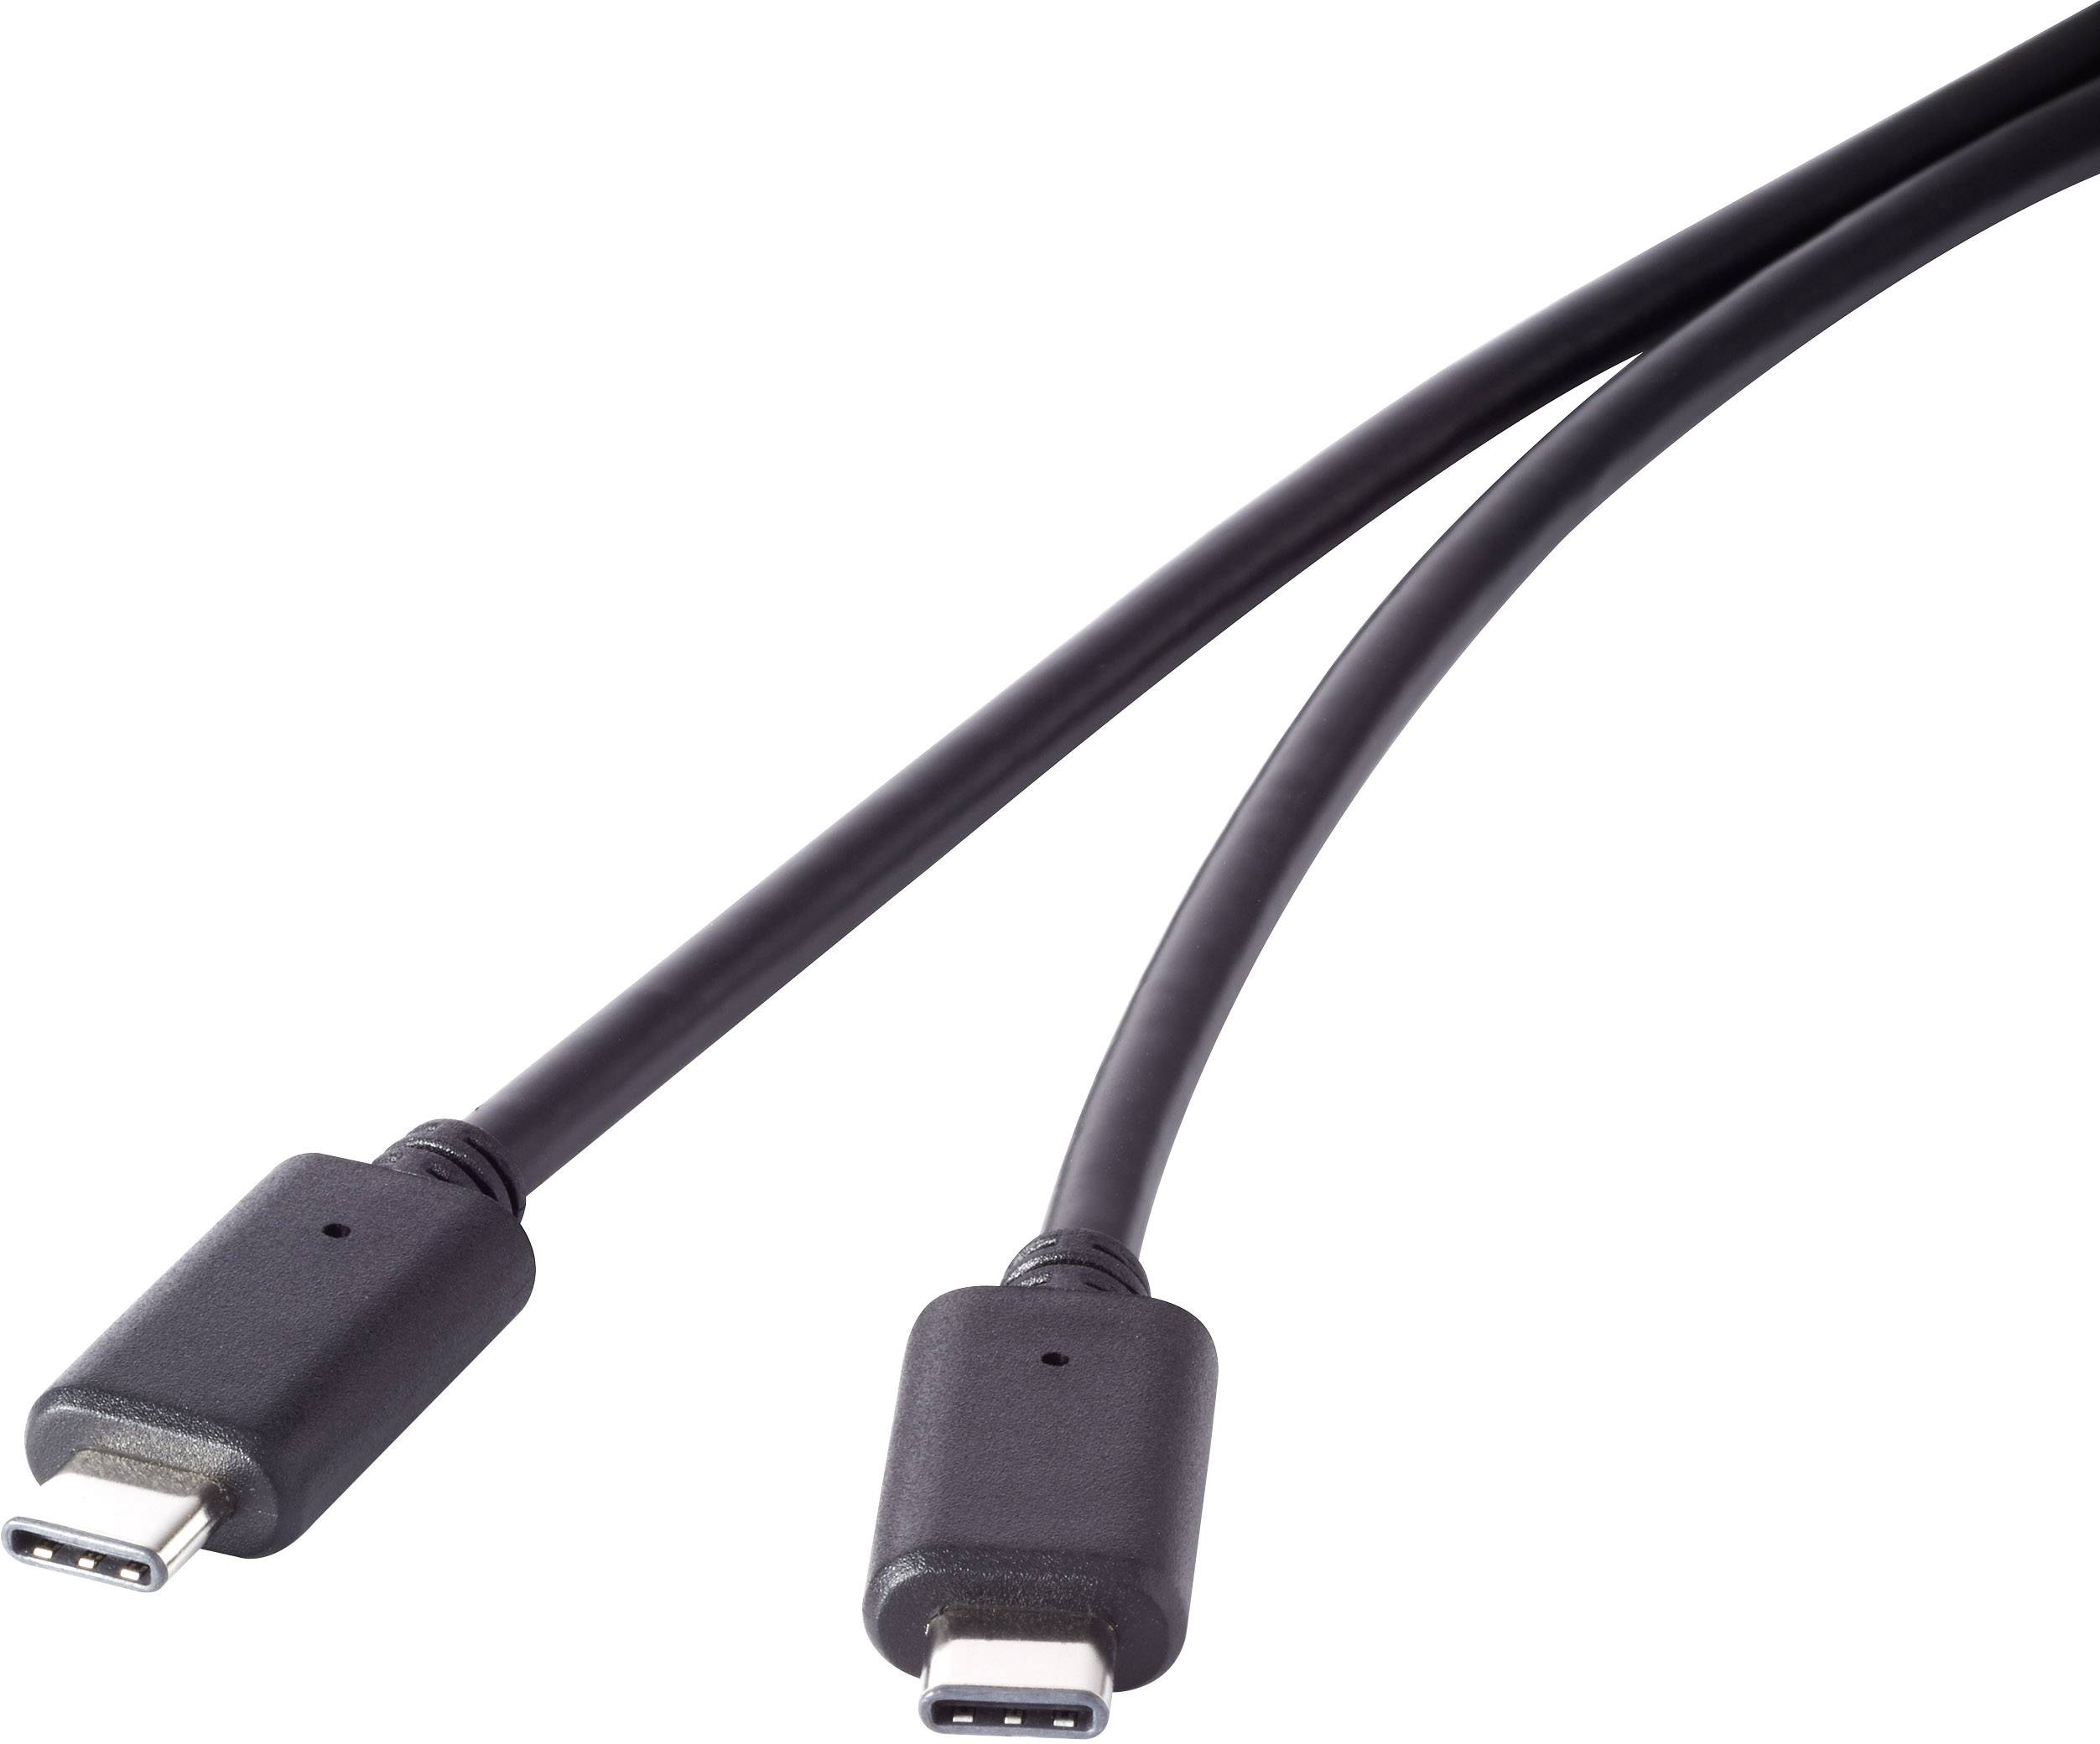 CONRAD USB 3.1 Gen 2 Kabel [1x USB-C? Stecker - 1x USB-C? Stecker] 1 m Schwarz vergoldete Steckkonta